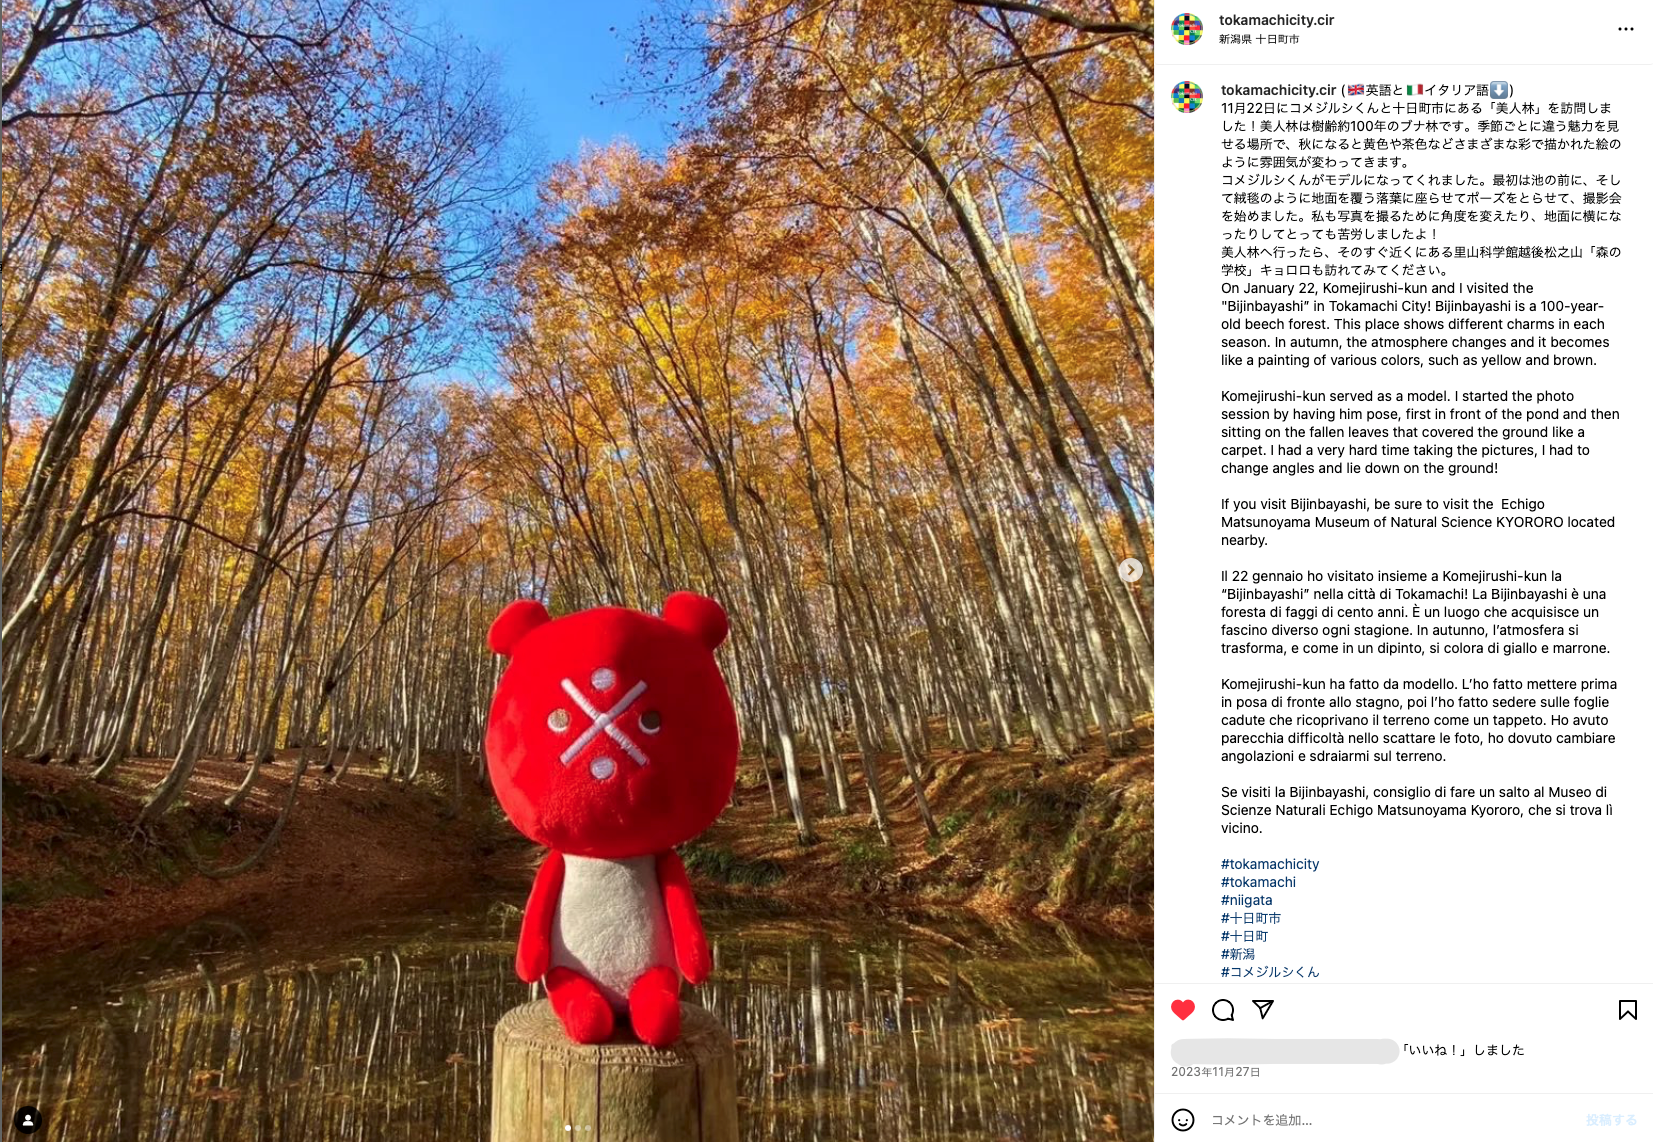 インスタグラムのアカウント「Tokamachi City CIR・十日町市国際交流員」に投稿された松之山の美人林の写真と掲載コメント